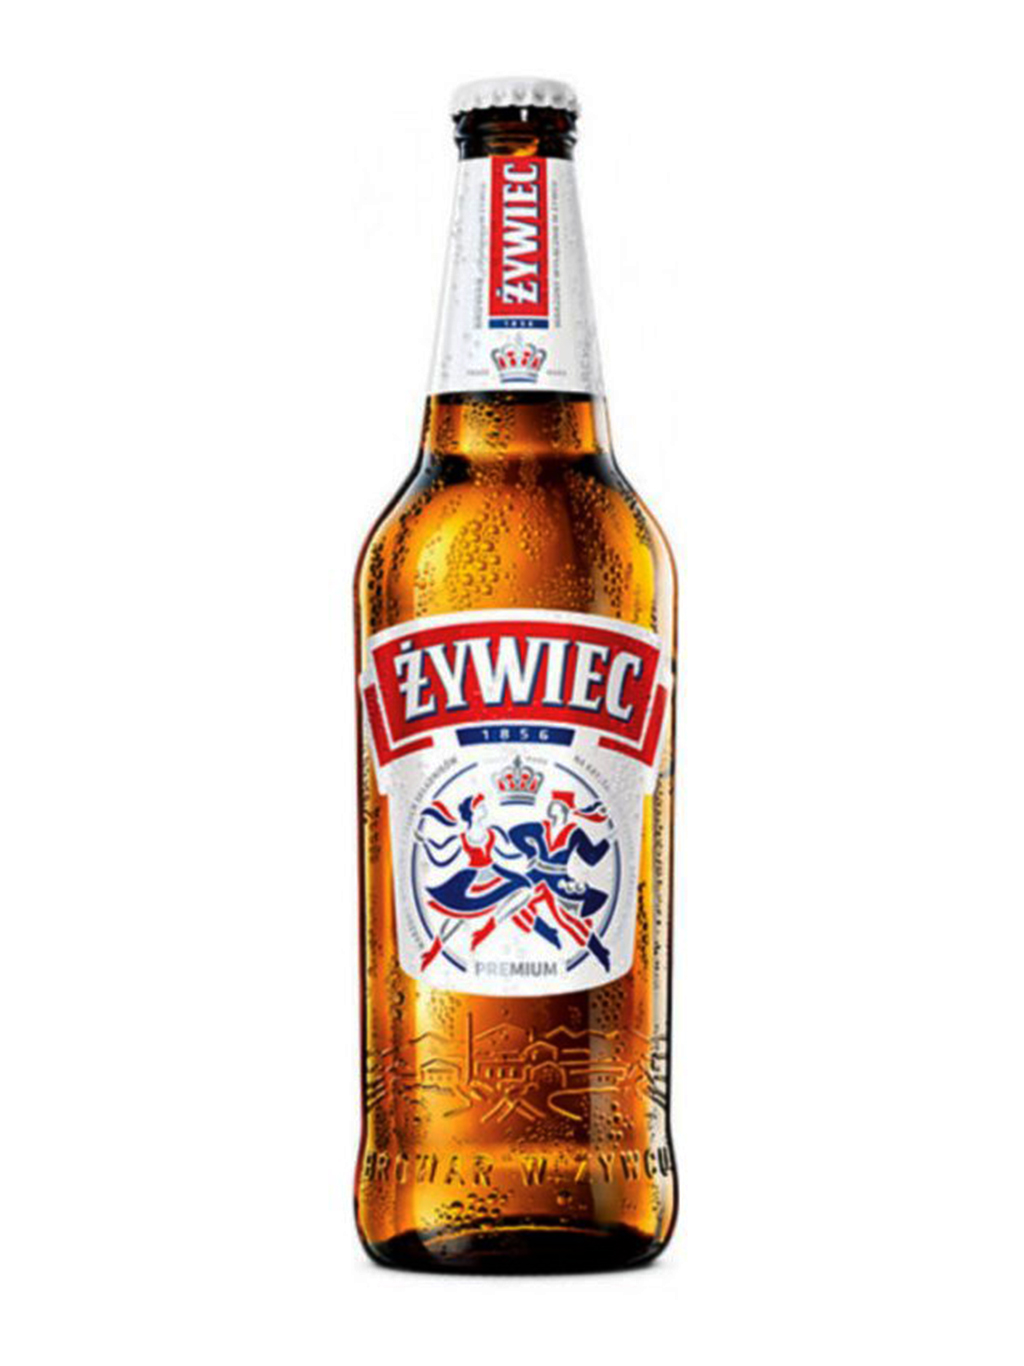 Jednou ze značek polského piva je Żywiec